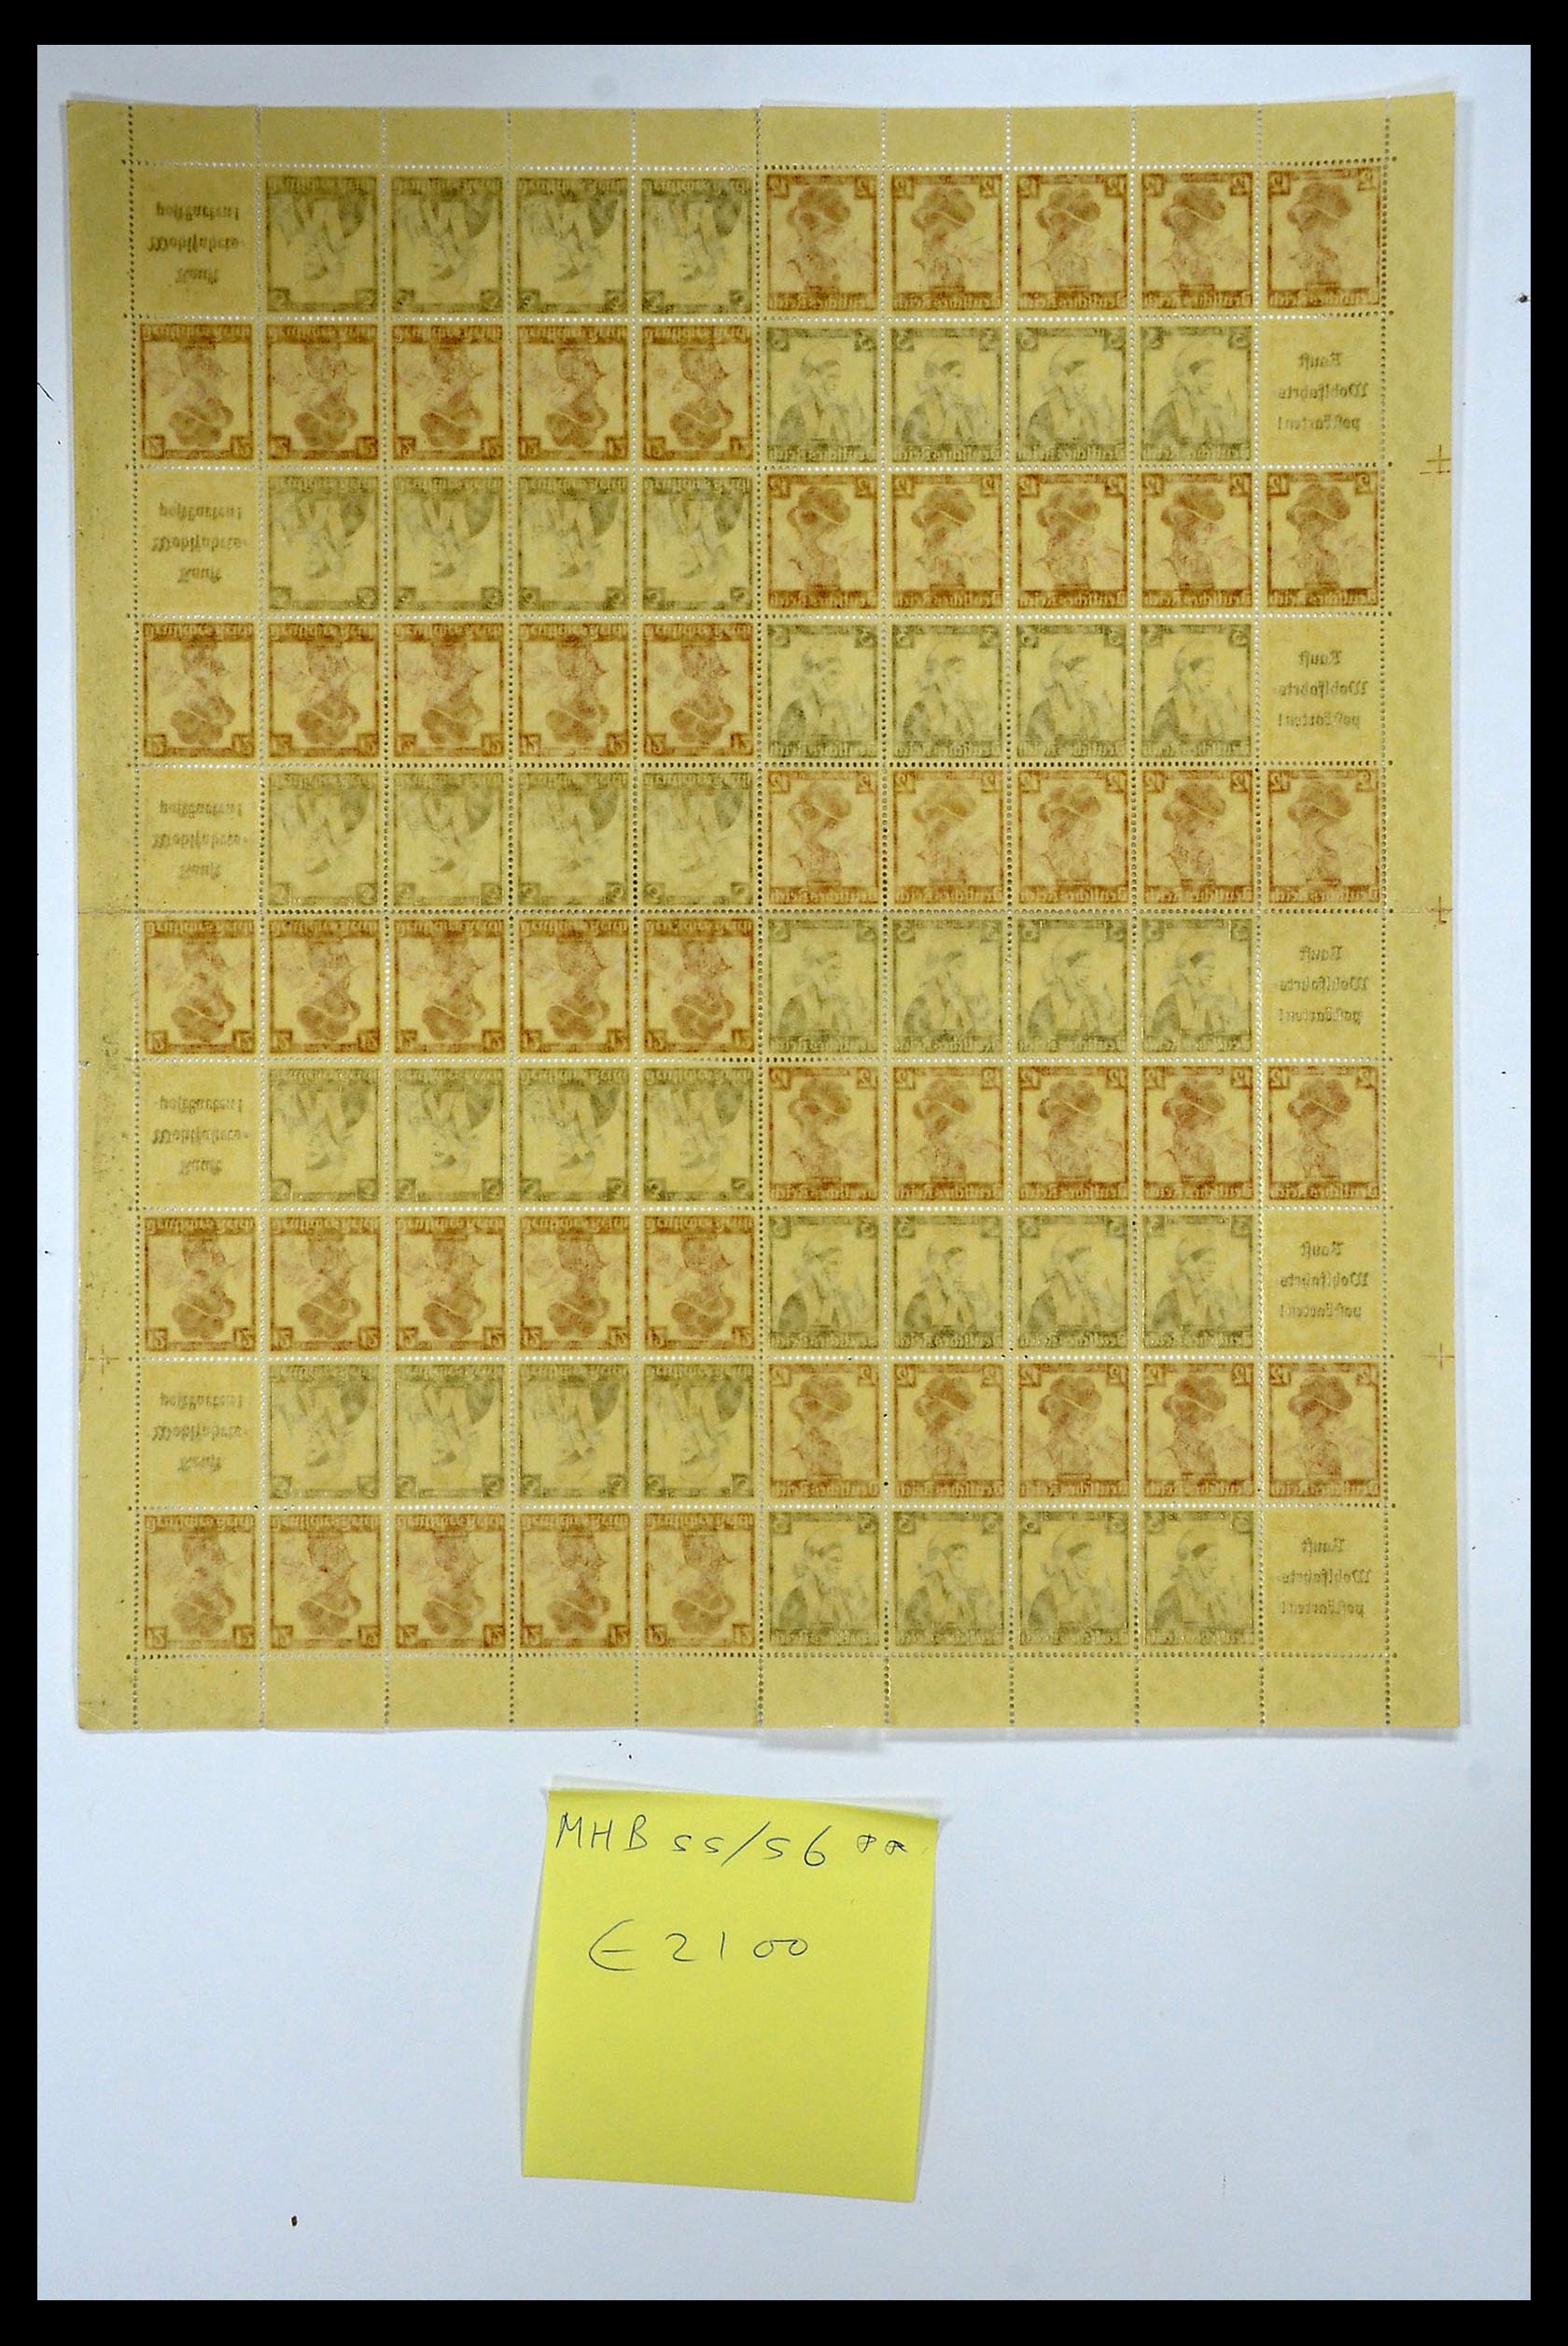 35075 038 - Stamp Collection 35075 German Reich Markenheftchenbogen 1933-1941.